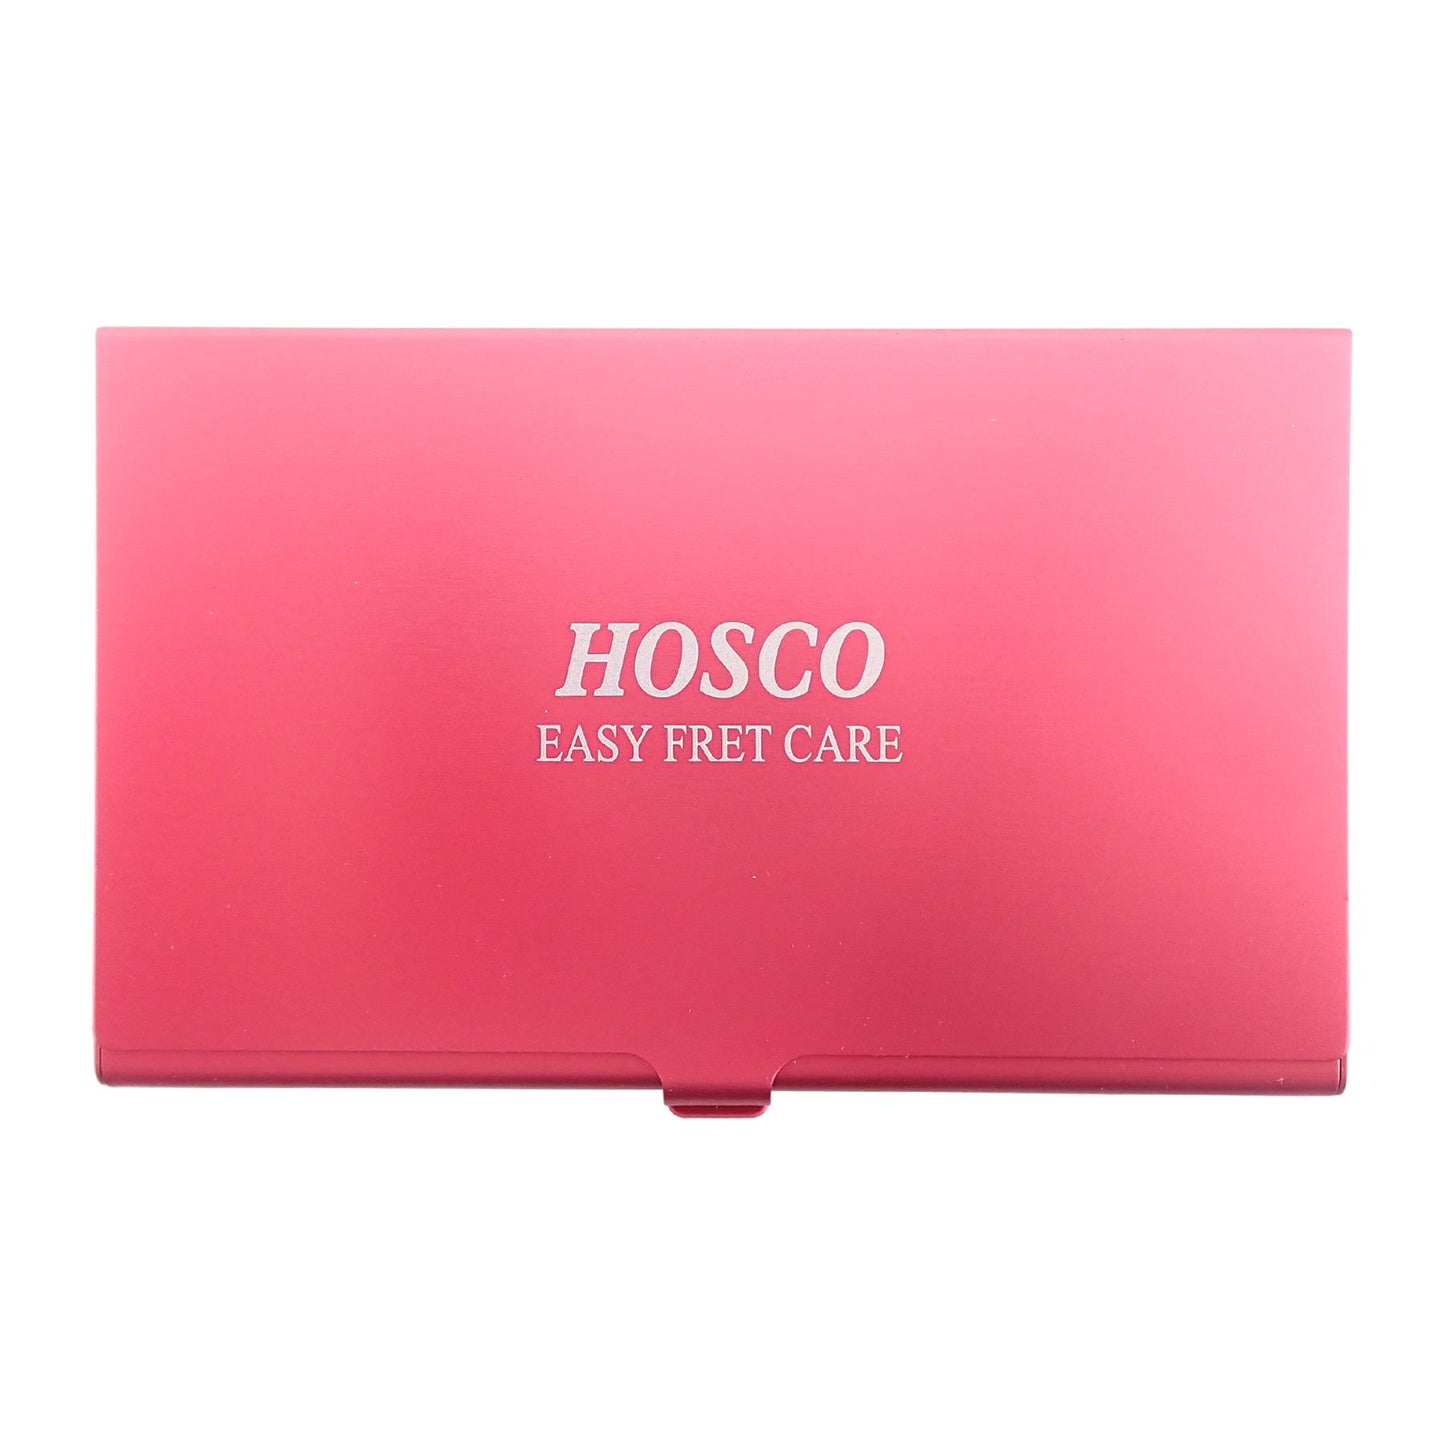 Hosco Easy Fret Care Kit 2.8mm